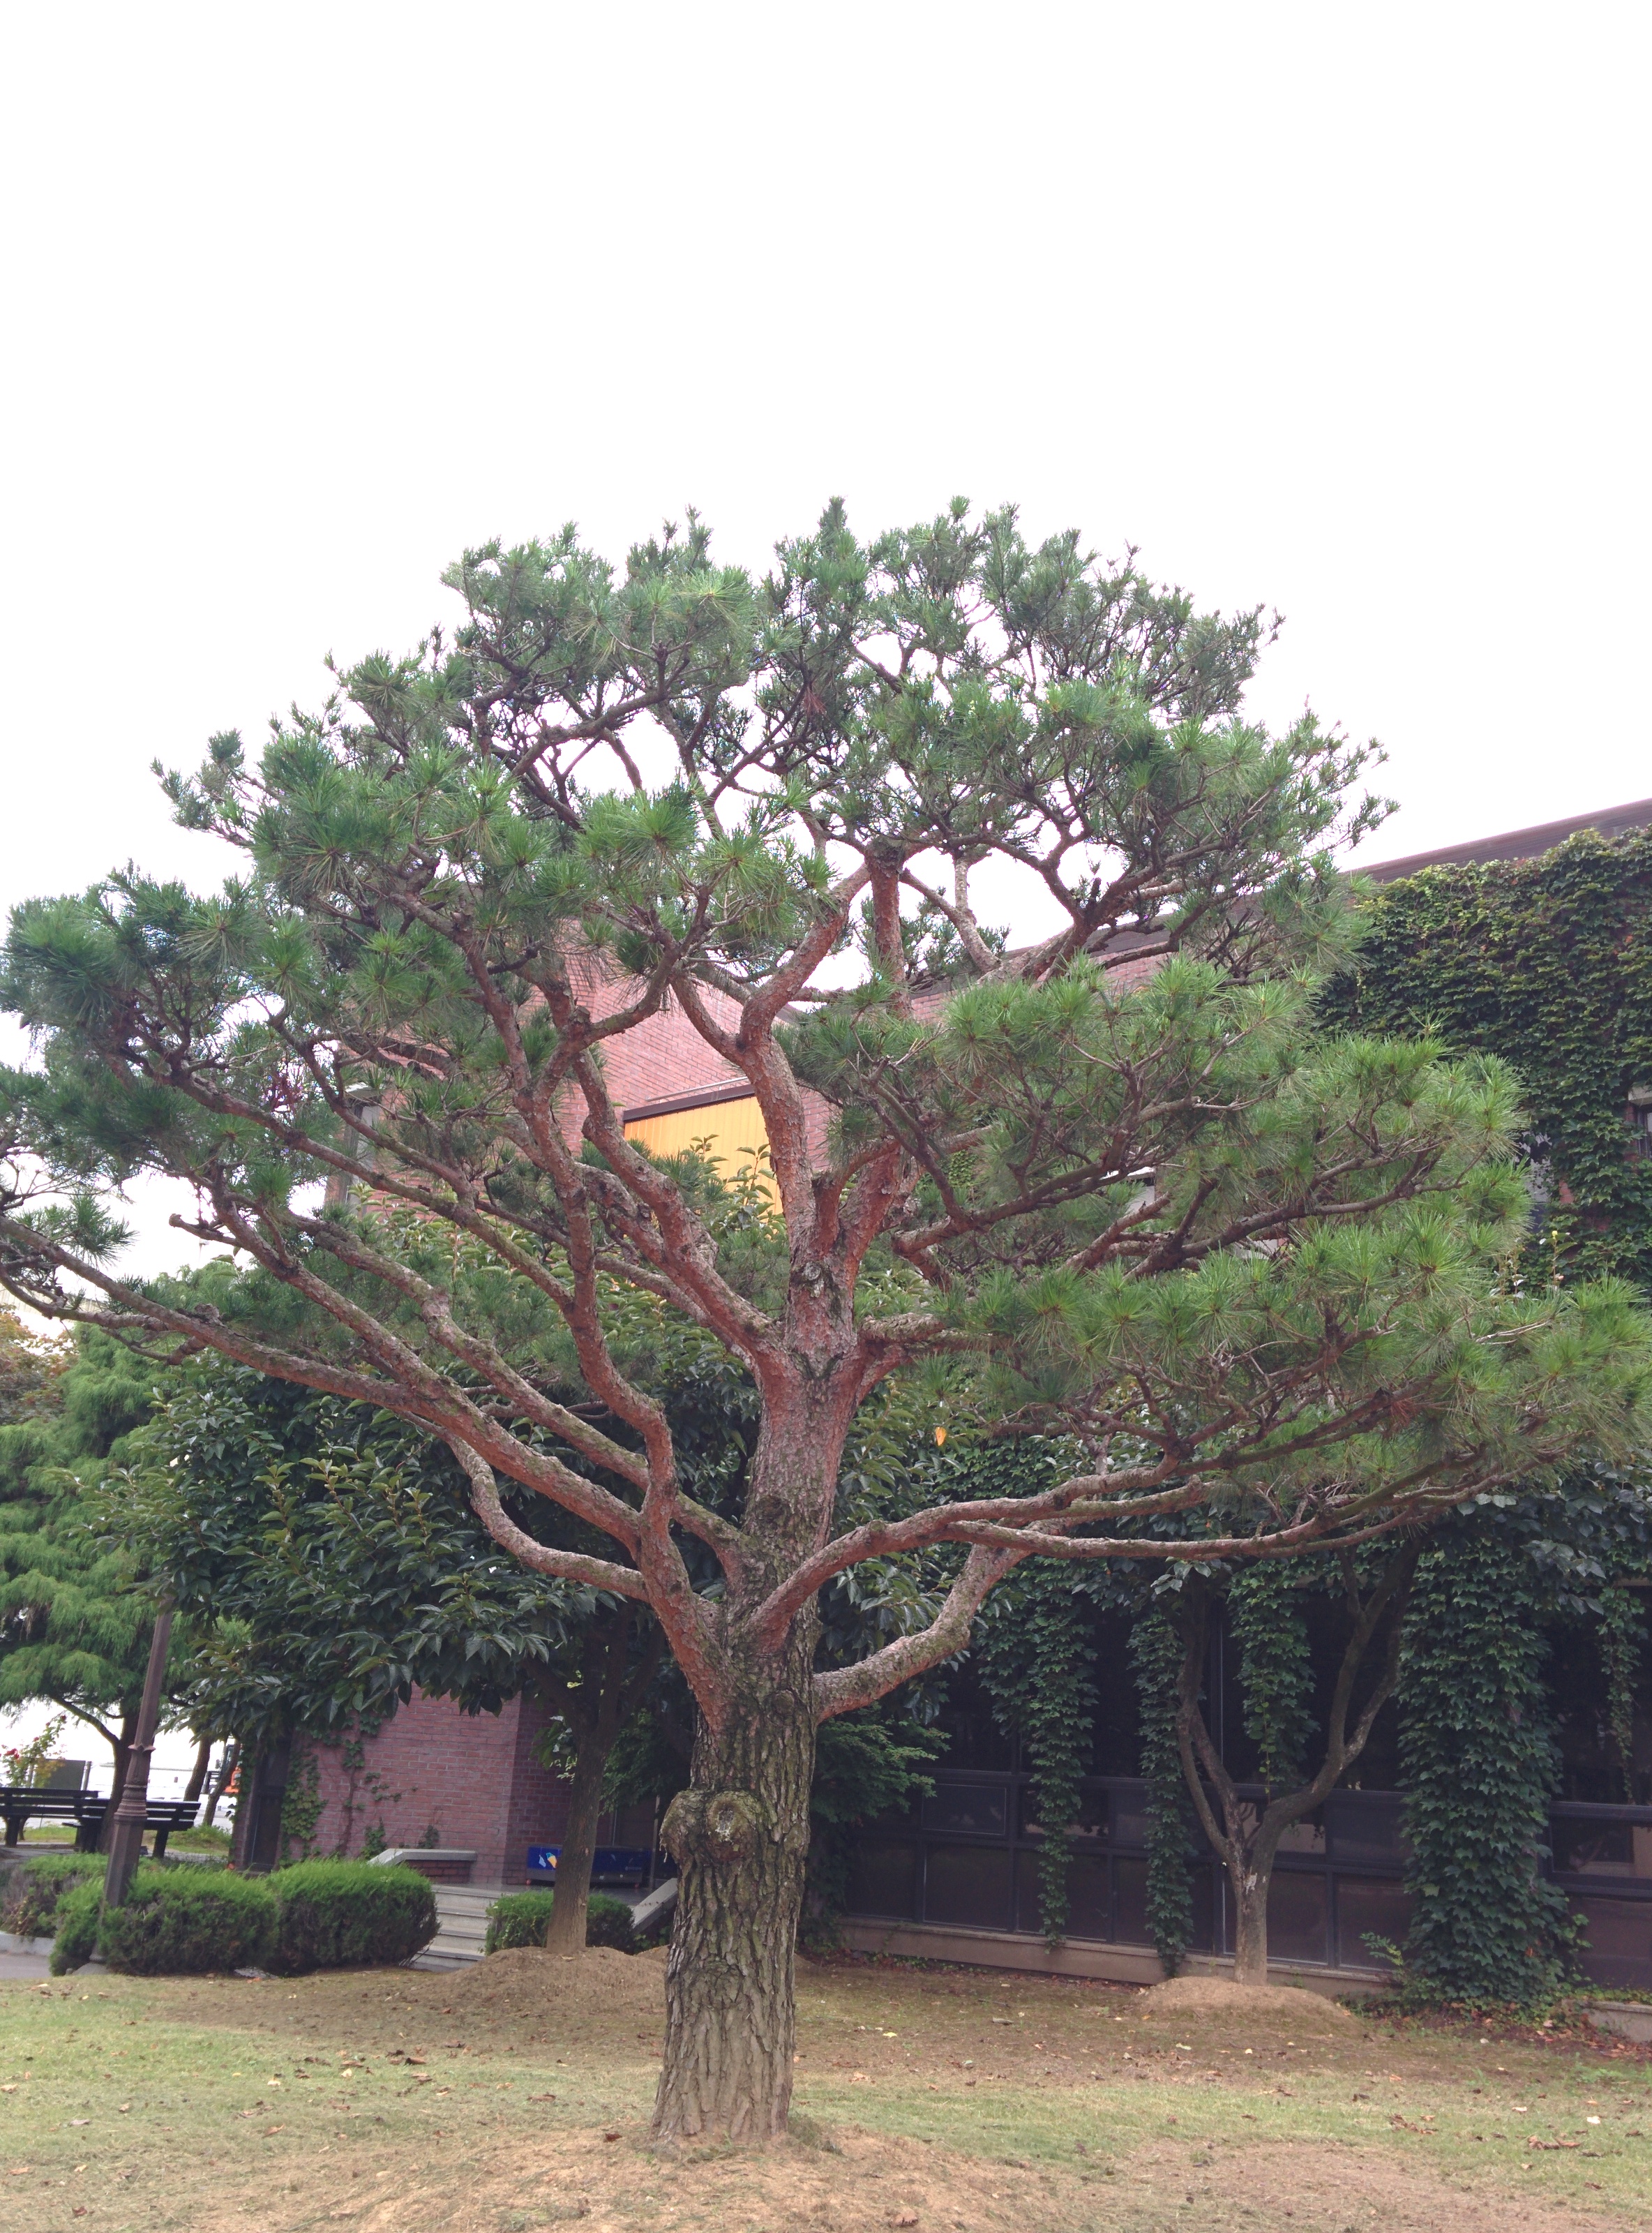 IMG_20150902_155654.jpg 전기연구원의 분재 소나무 (HDR+사진, 일반사진 비교)